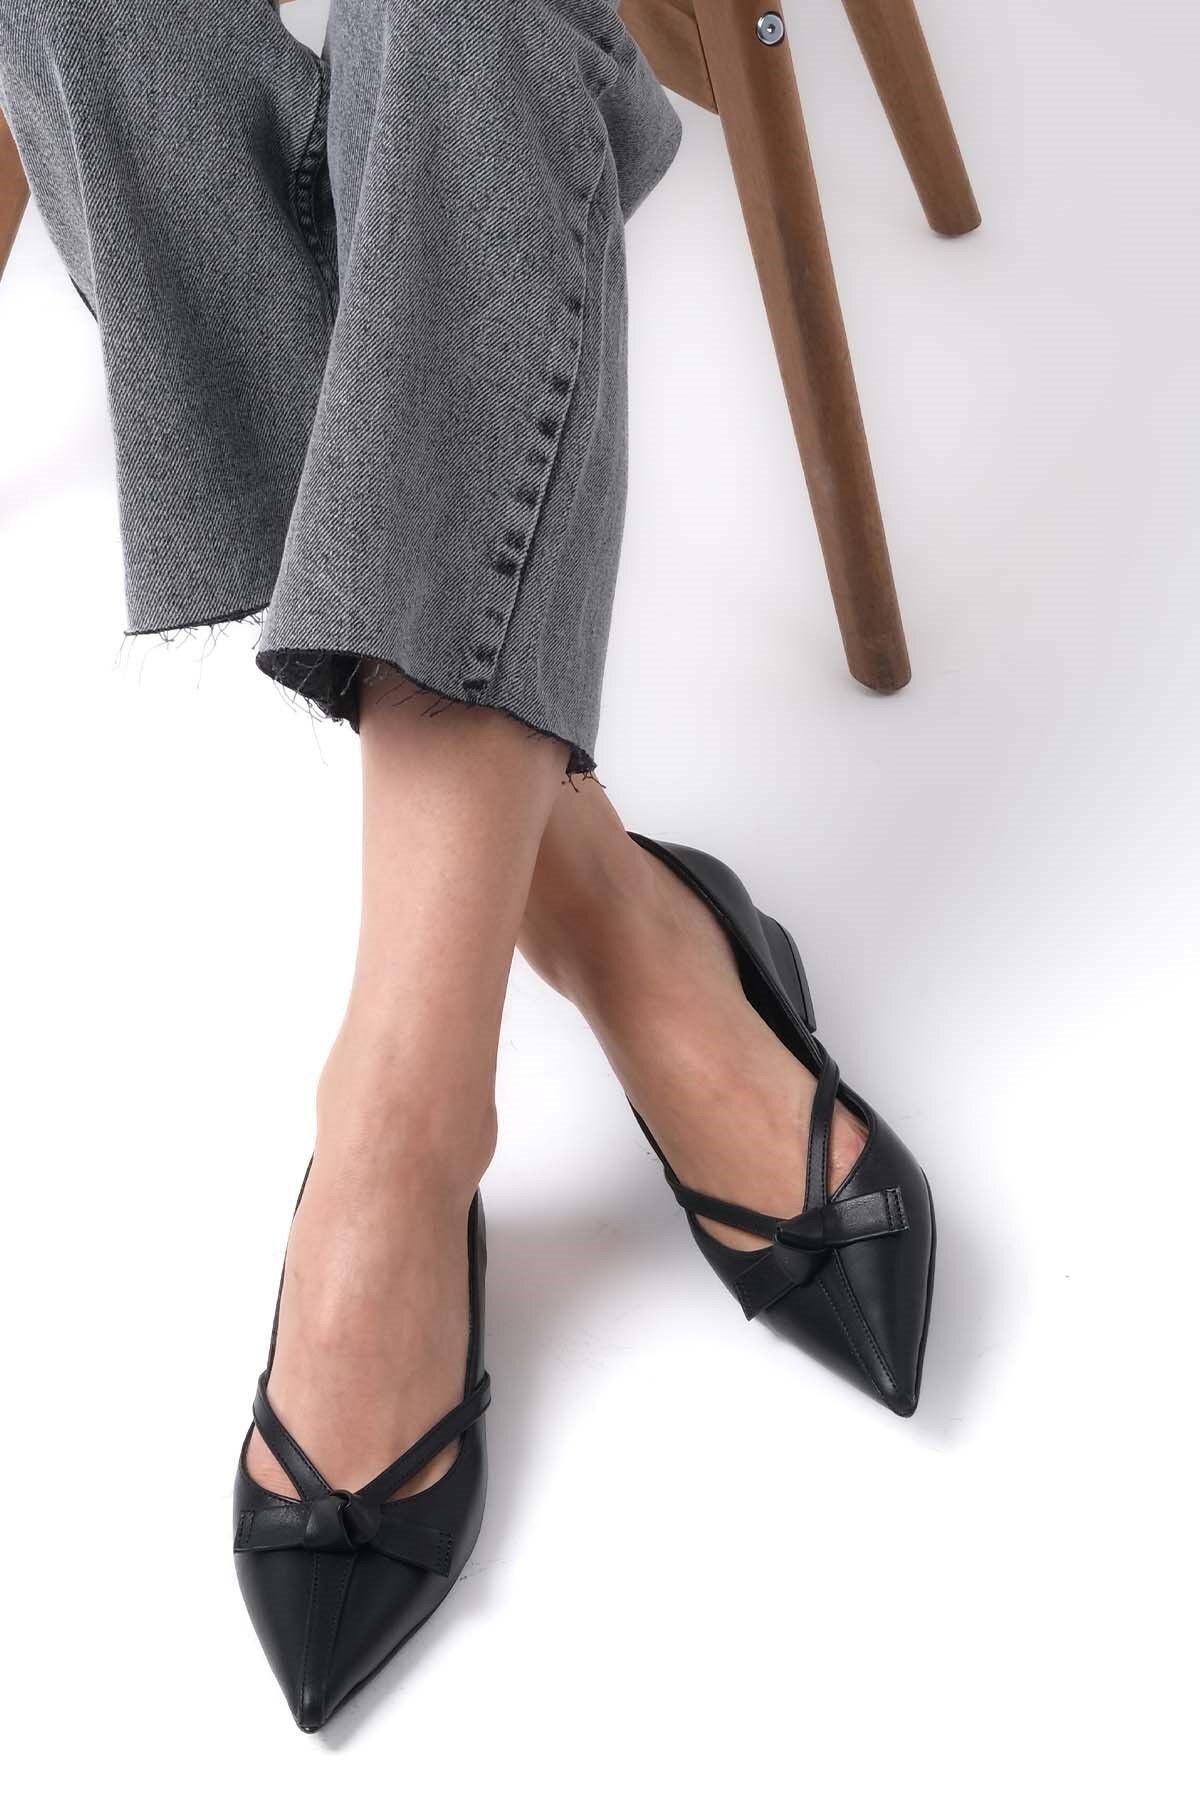 Mio Gusto Lisa Hakiki Deri Siyah Renk Kadın Kısa Topuklu Ayakkabı